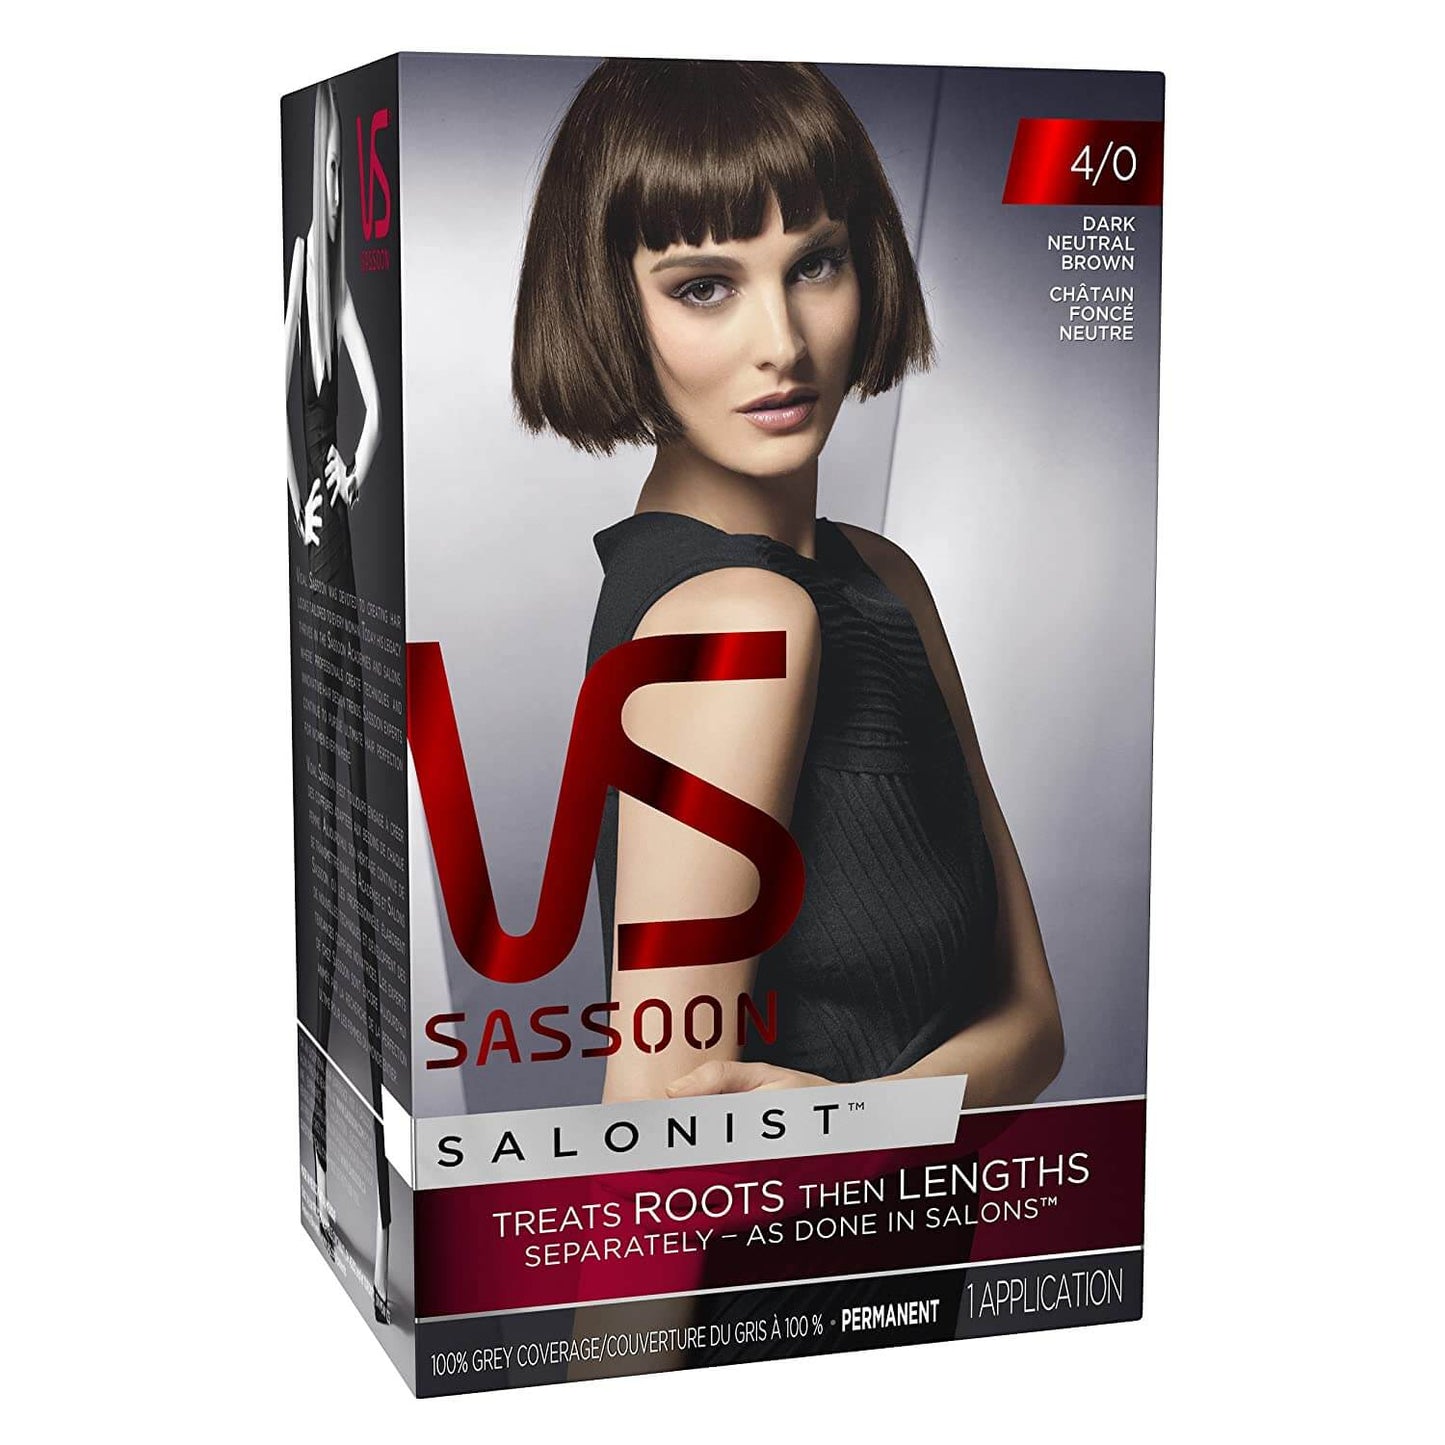 Vidal Sassoon Salonist Permanent Hair Colour - Dark Neutral Brown